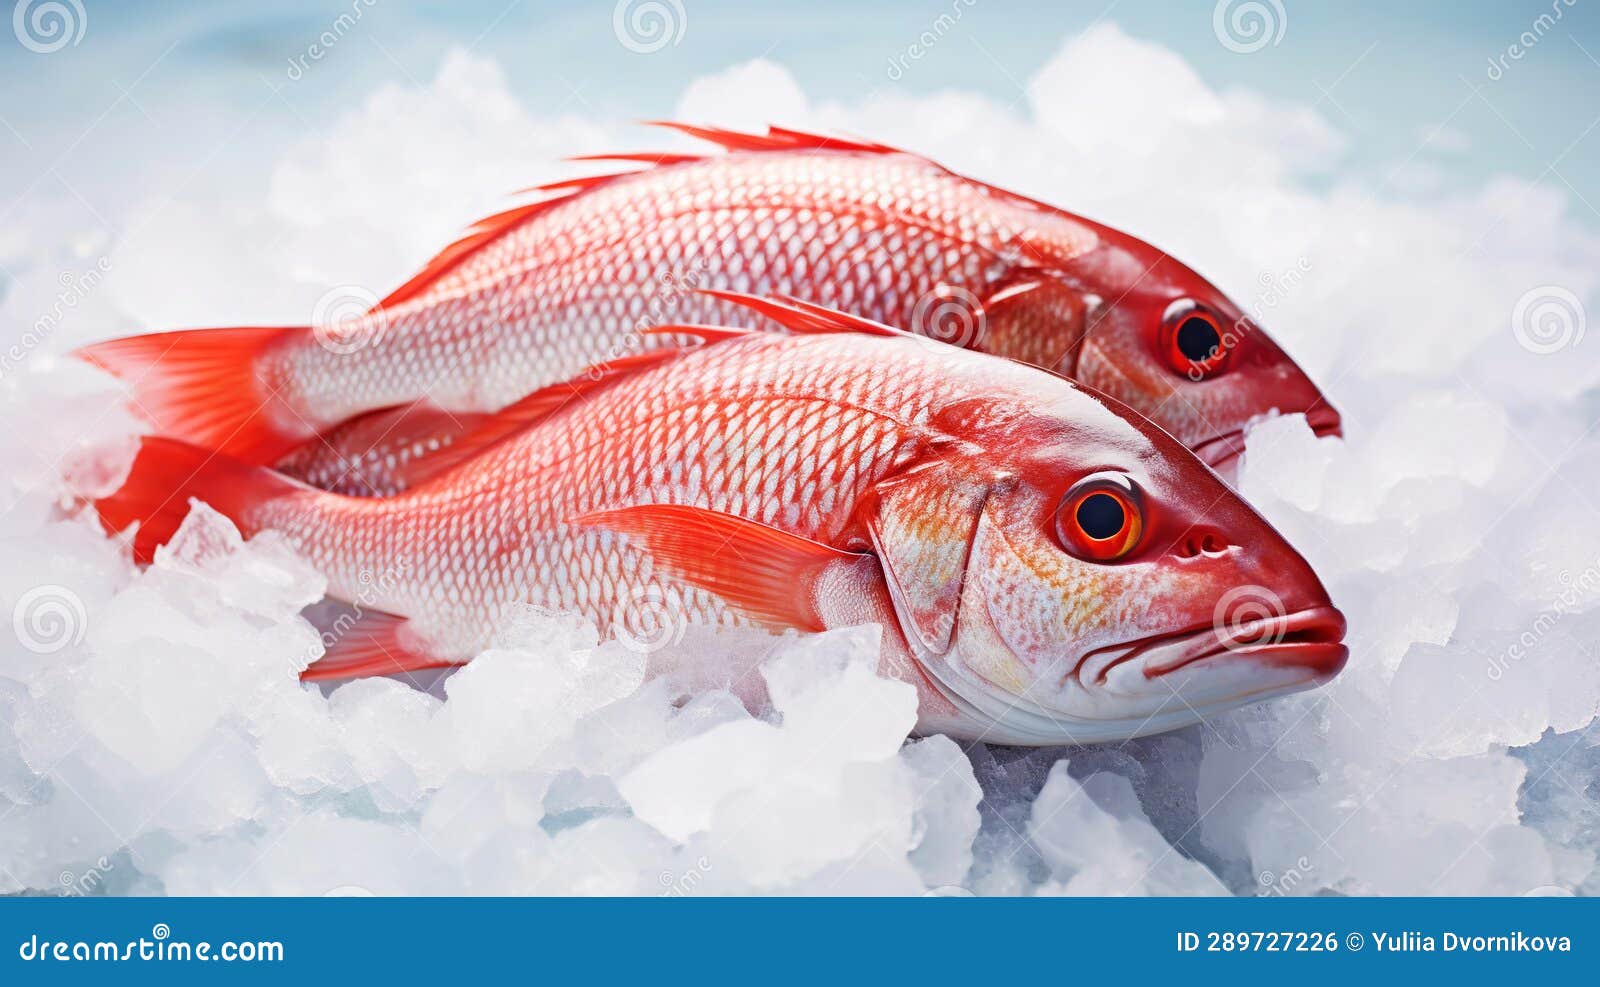 Premium Photo  Red fish in aspic